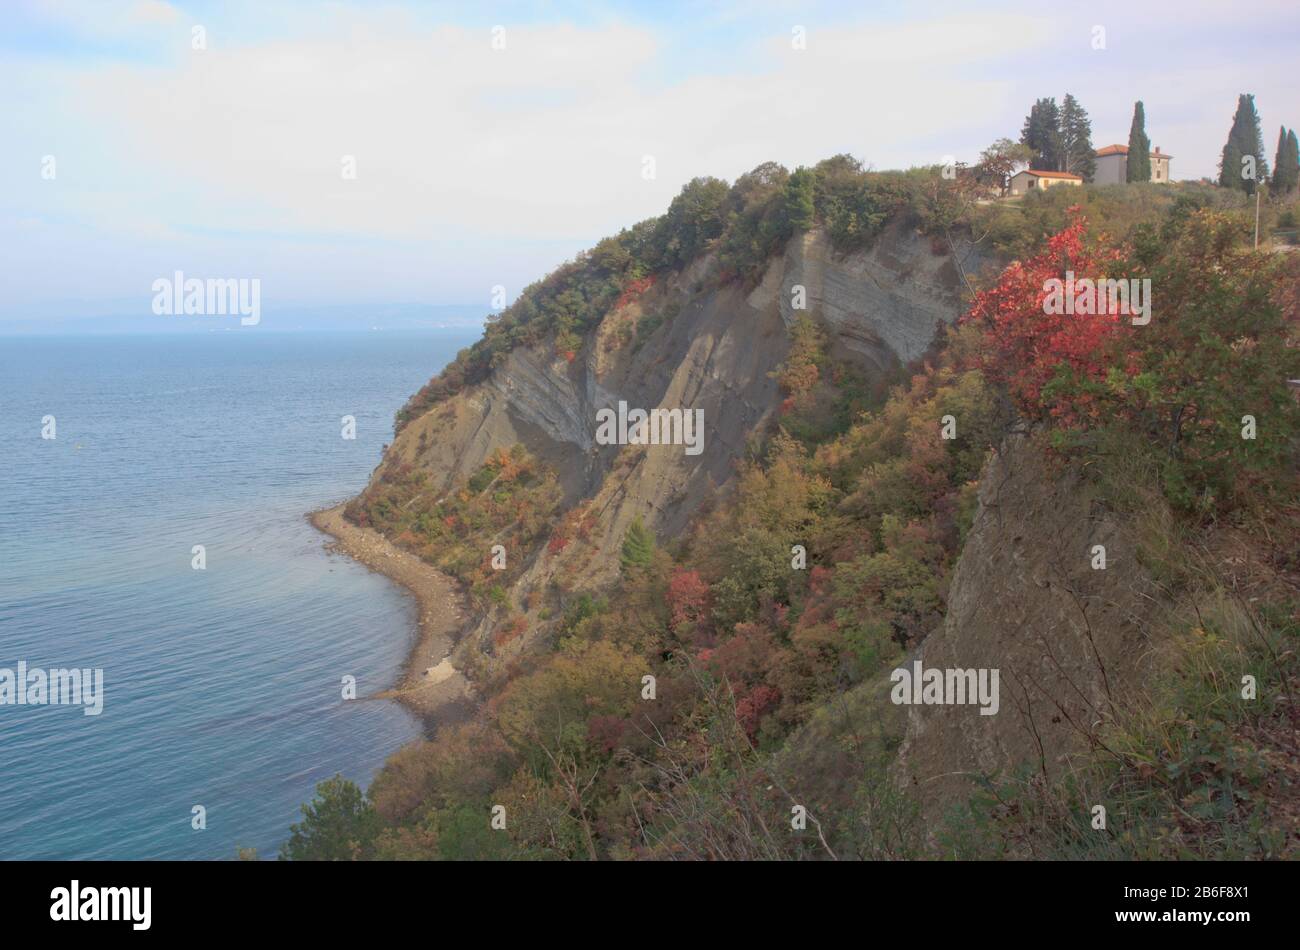 Slovenian cliff coast in autumn, Mesecev zaliv, flisch cliff between cape Kane and Strunjan salt pans, Trieste bay, Slovenia, Mediterranean Europe Stock Photo